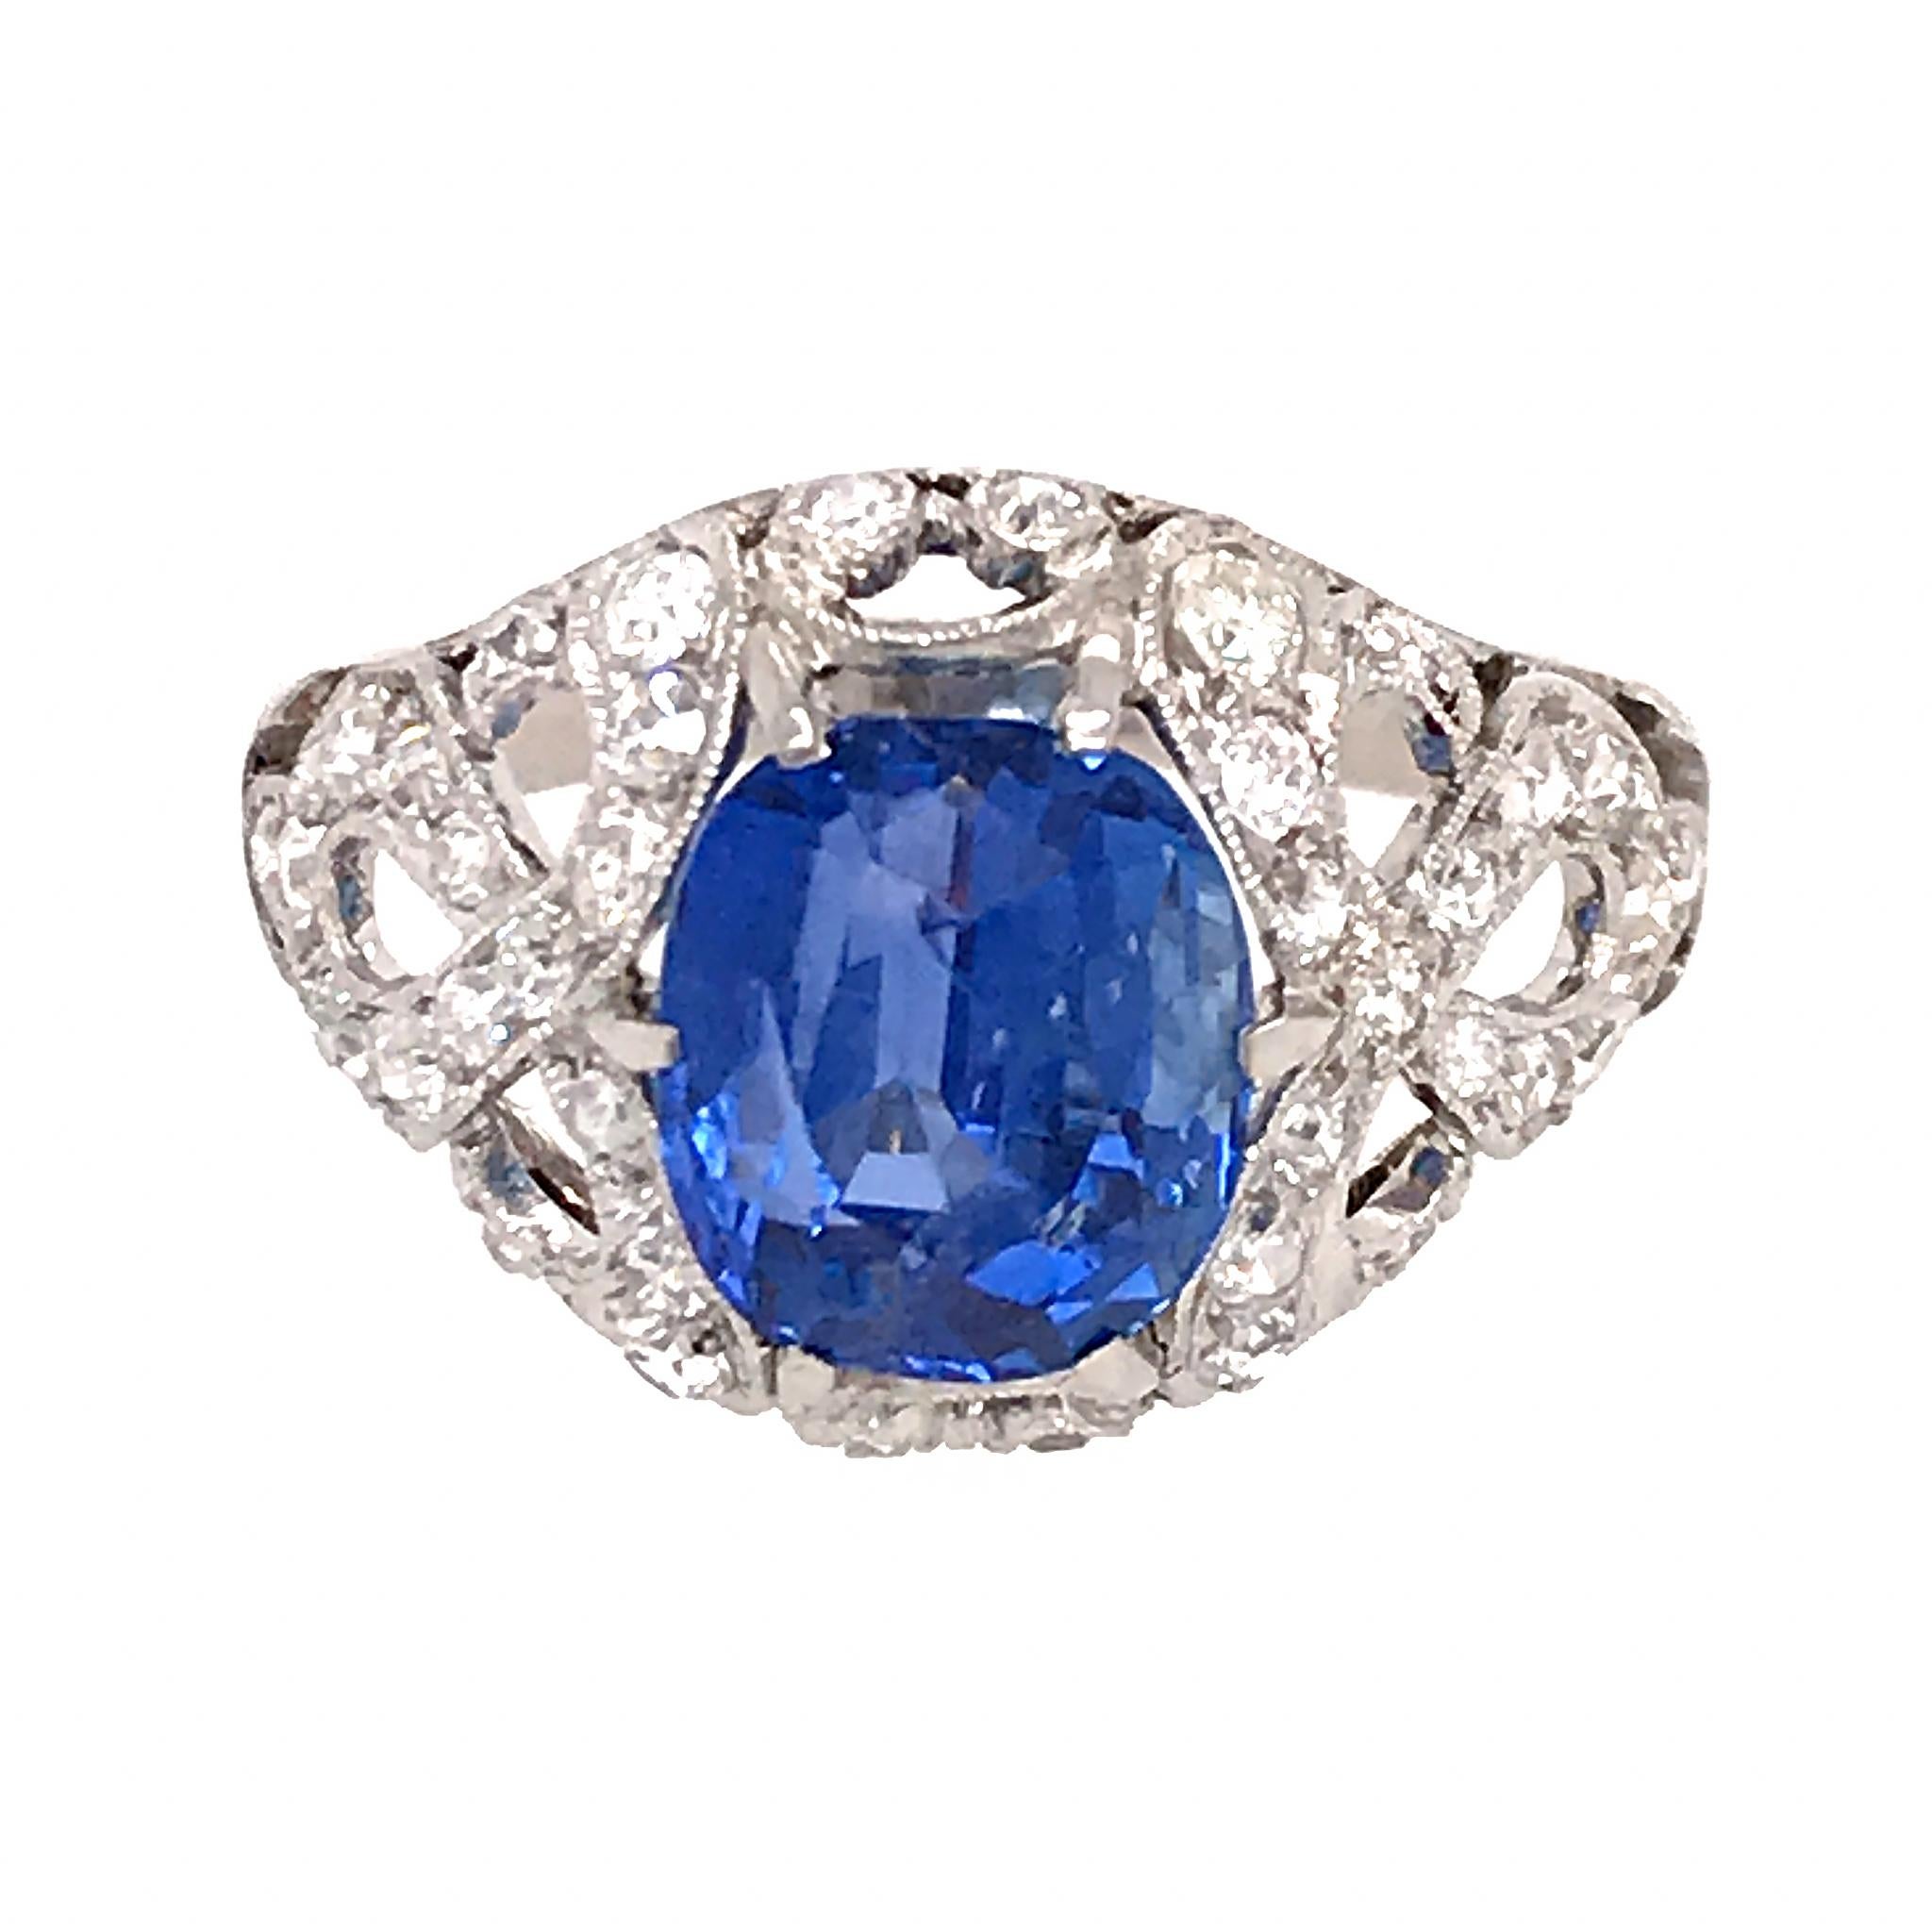 Platin
Saphir: 3.55 ct TW
GIA-Berichtsnummer: 6203700180
Saphir-Schliff: Oval - Brillantschliff
Farbe: Blau - Keine Hitze
Herkunft:  Sri Lanka
Diamant: 0,60 ct twd
Ringgröße: 5